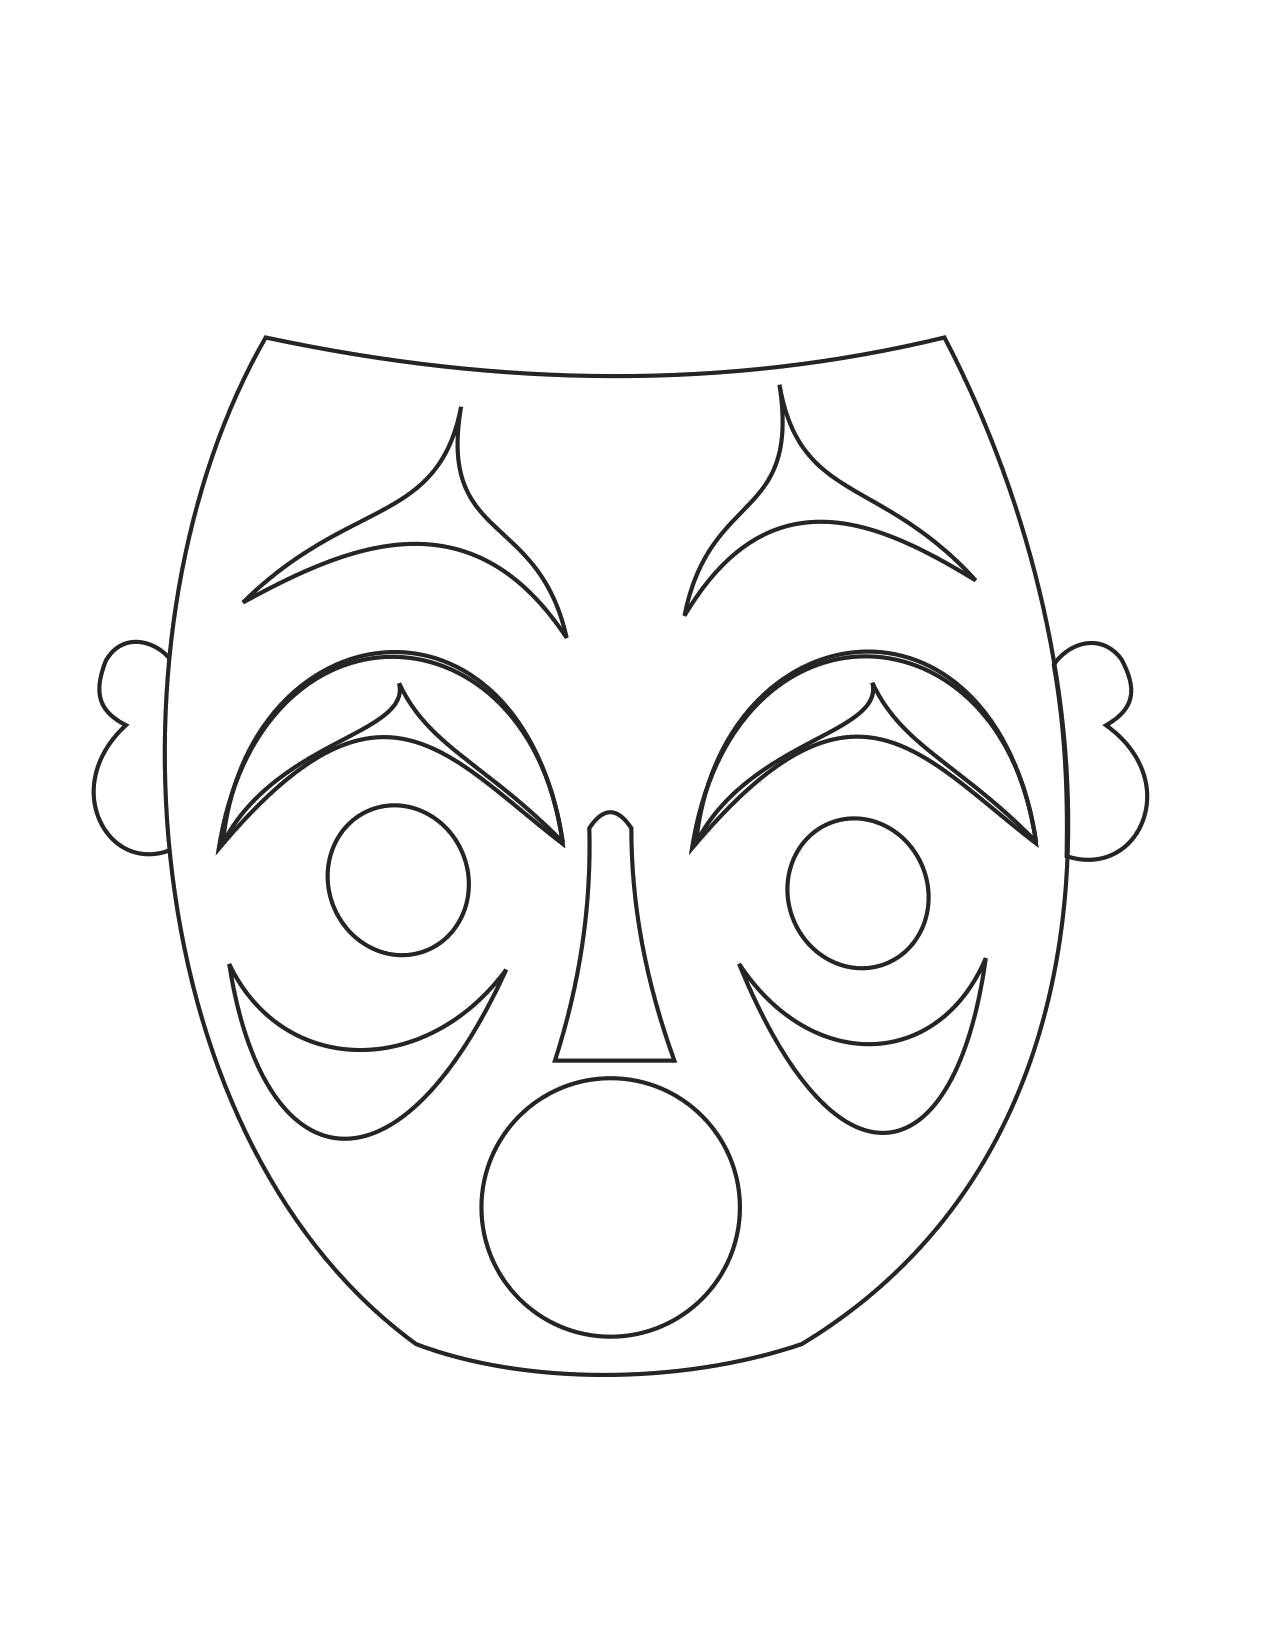 Маска напечатать. Маска раскраска. Трафареты театральных масок для лица. Маска для распечатки. Шаблоны масок для театра.